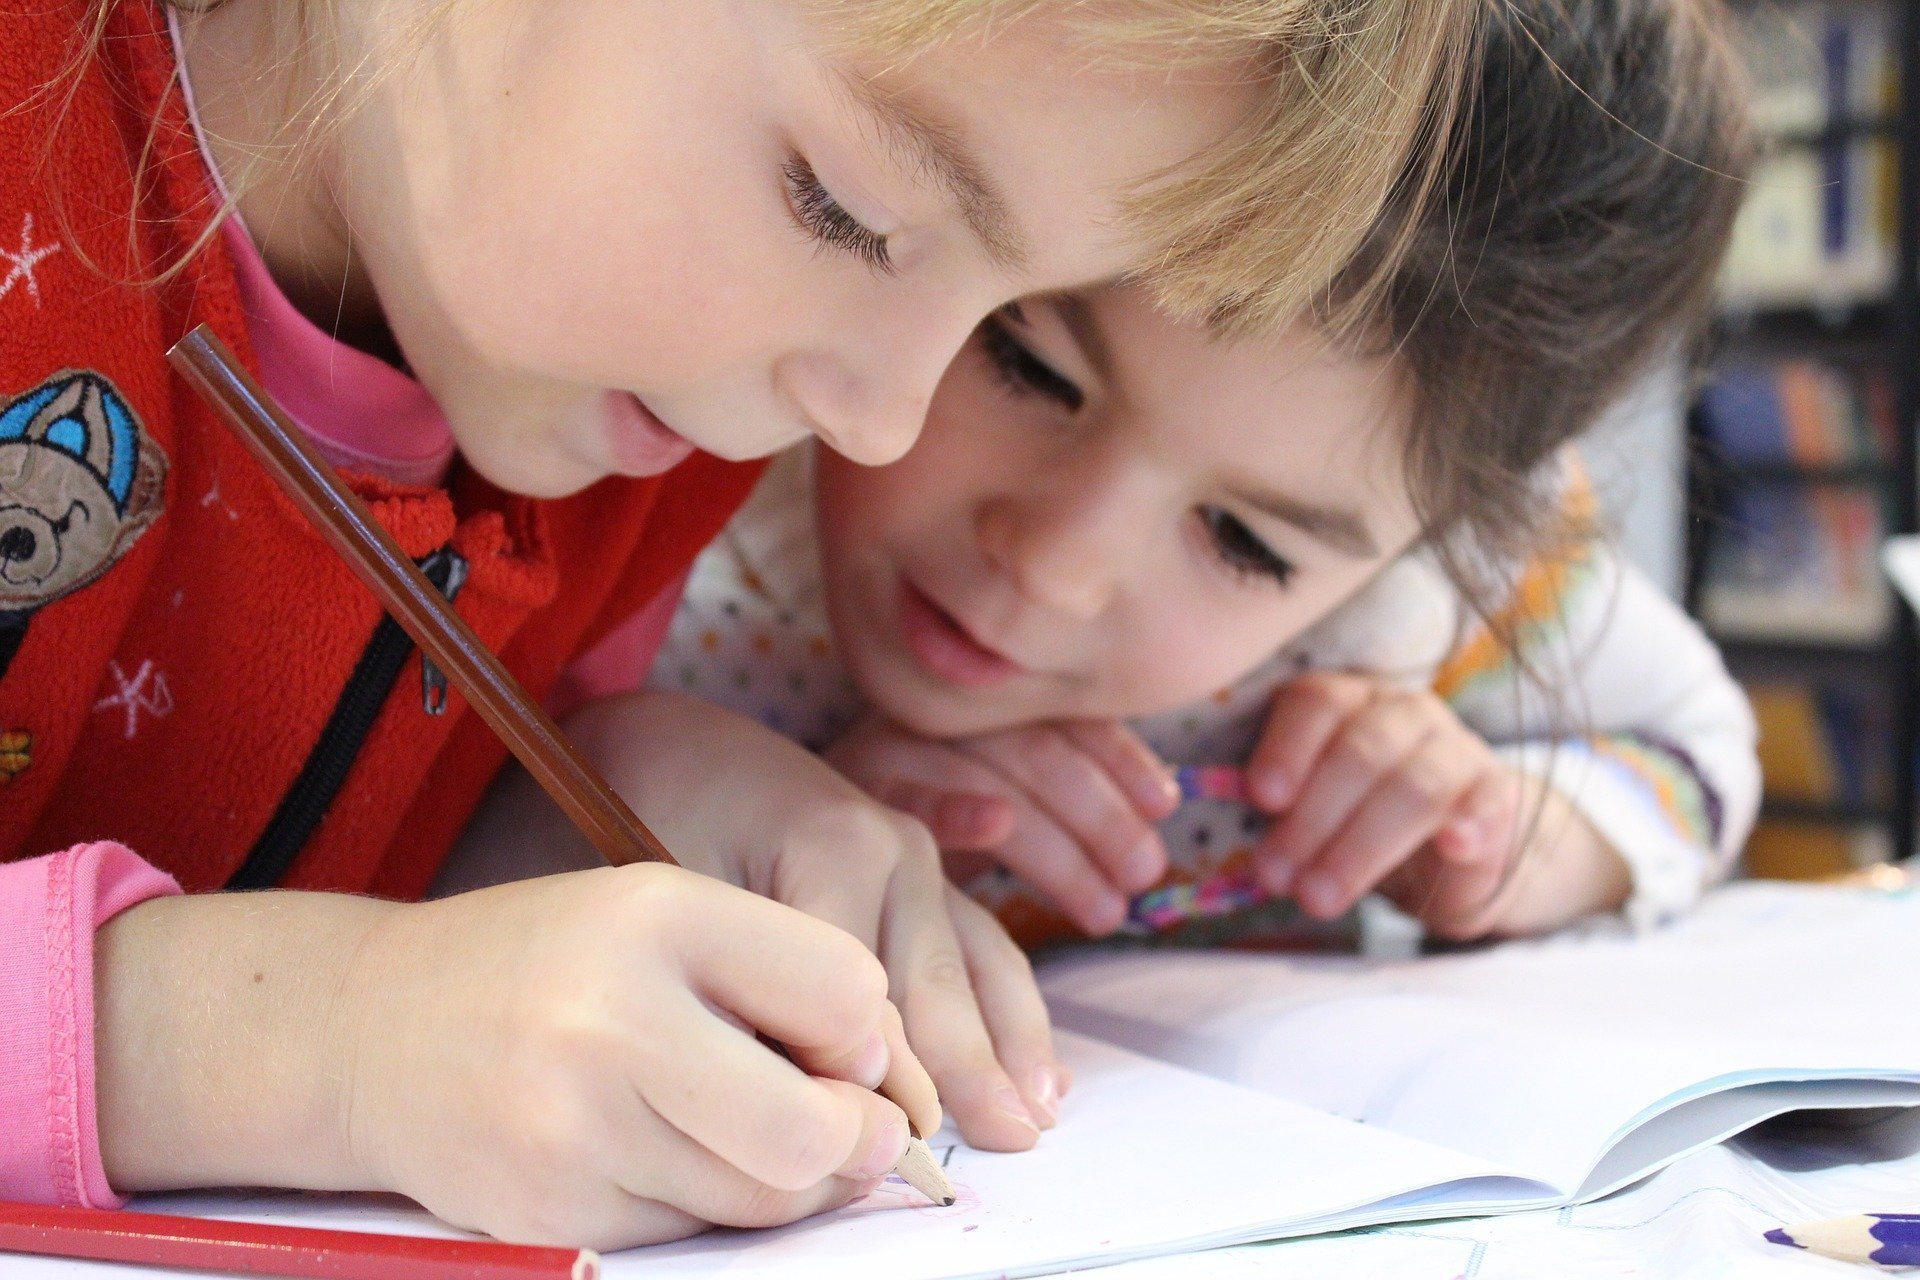 Clauze speciale adăugate în contractul educațional semnat între părinți și școli